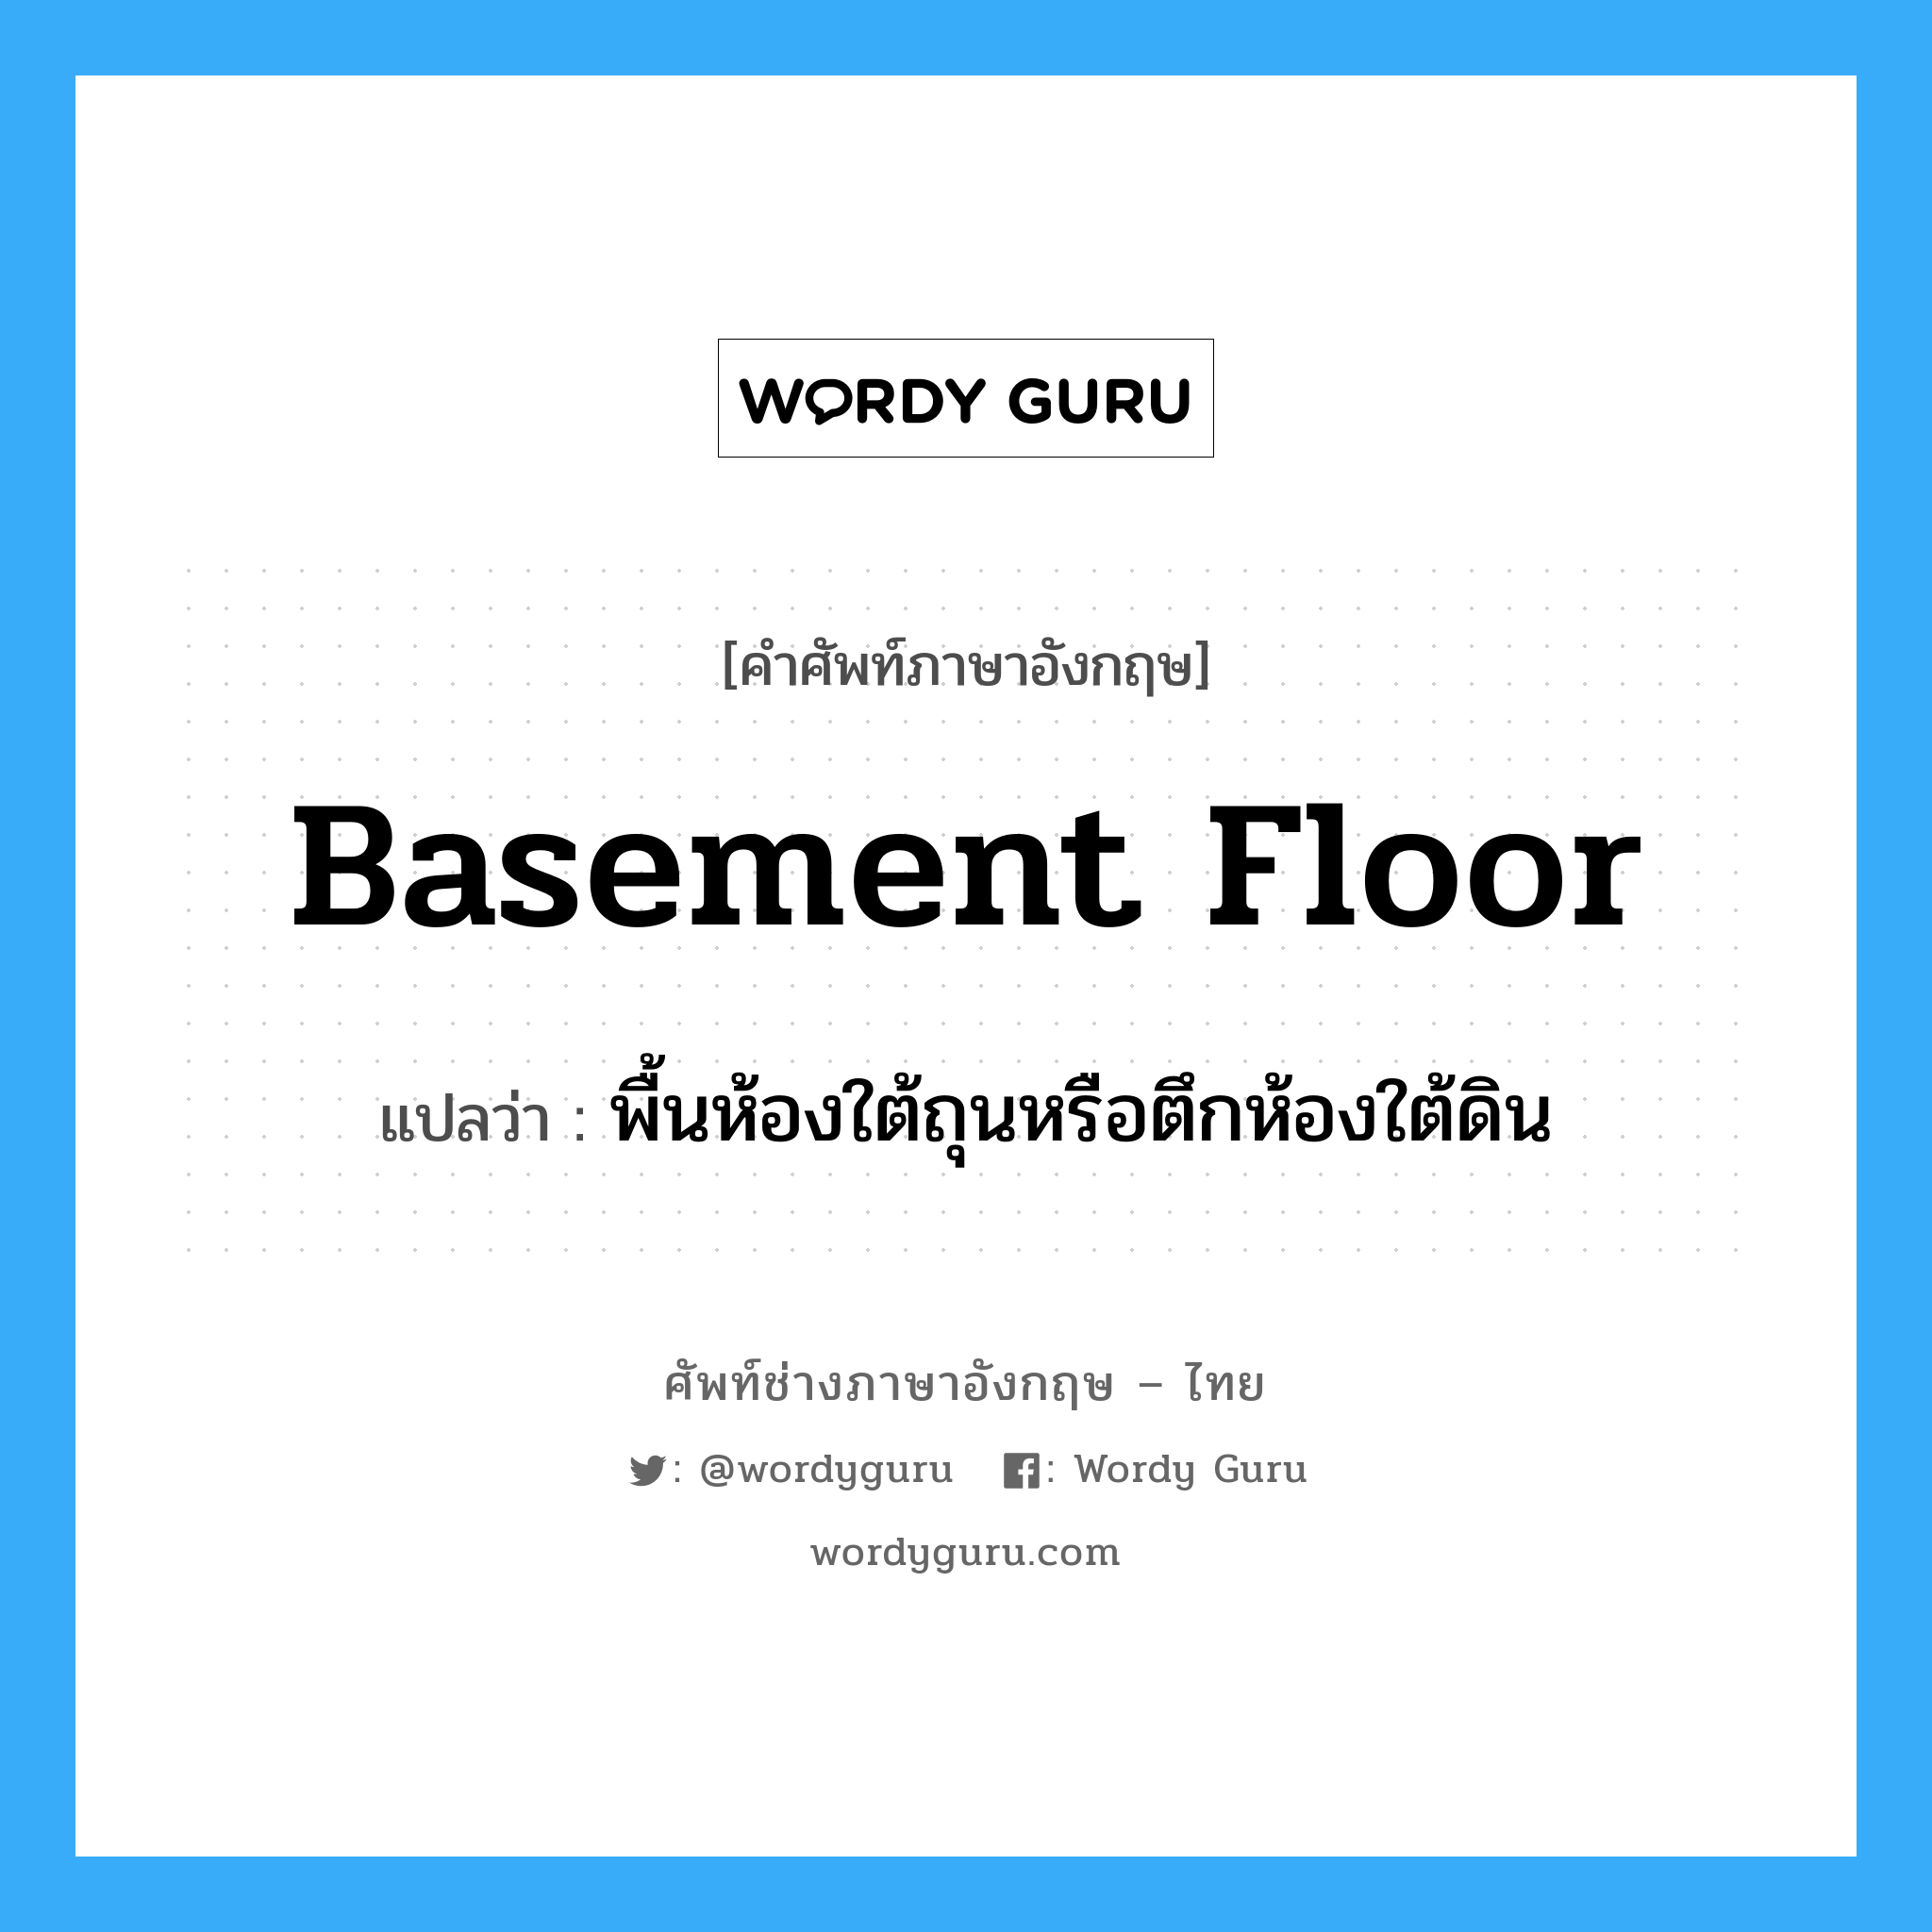 basement floor แปลว่า?, คำศัพท์ช่างภาษาอังกฤษ - ไทย basement floor คำศัพท์ภาษาอังกฤษ basement floor แปลว่า พื้นห้องใต้ถุนหรือตึกห้องใต้ดิน